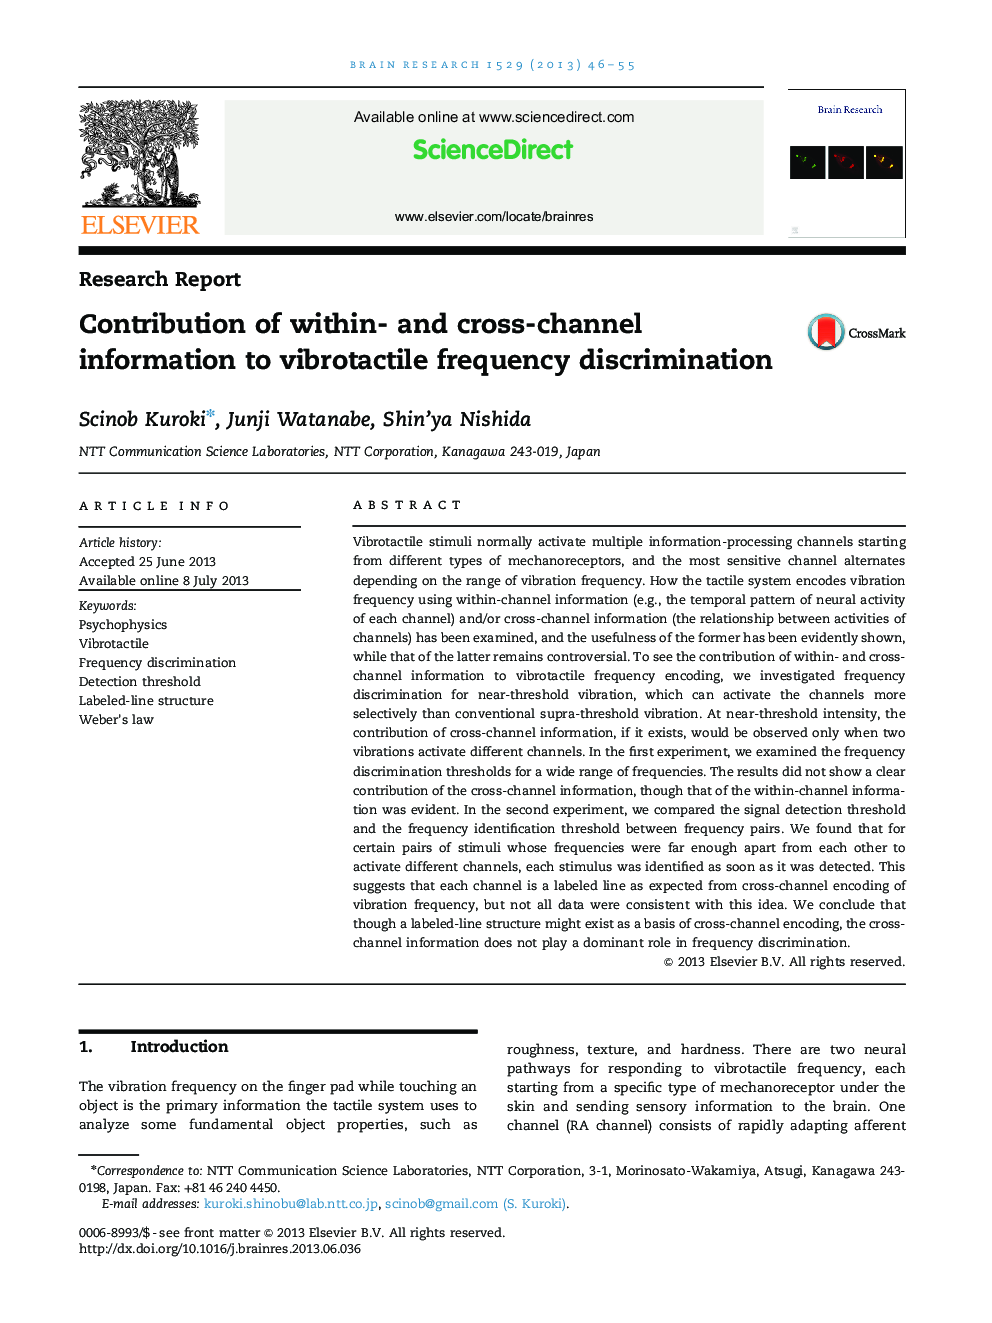 گزارش تحقیق تعیین اطلاعات درون و بین کانال به تبعیض فرکانس ارتعاشی 